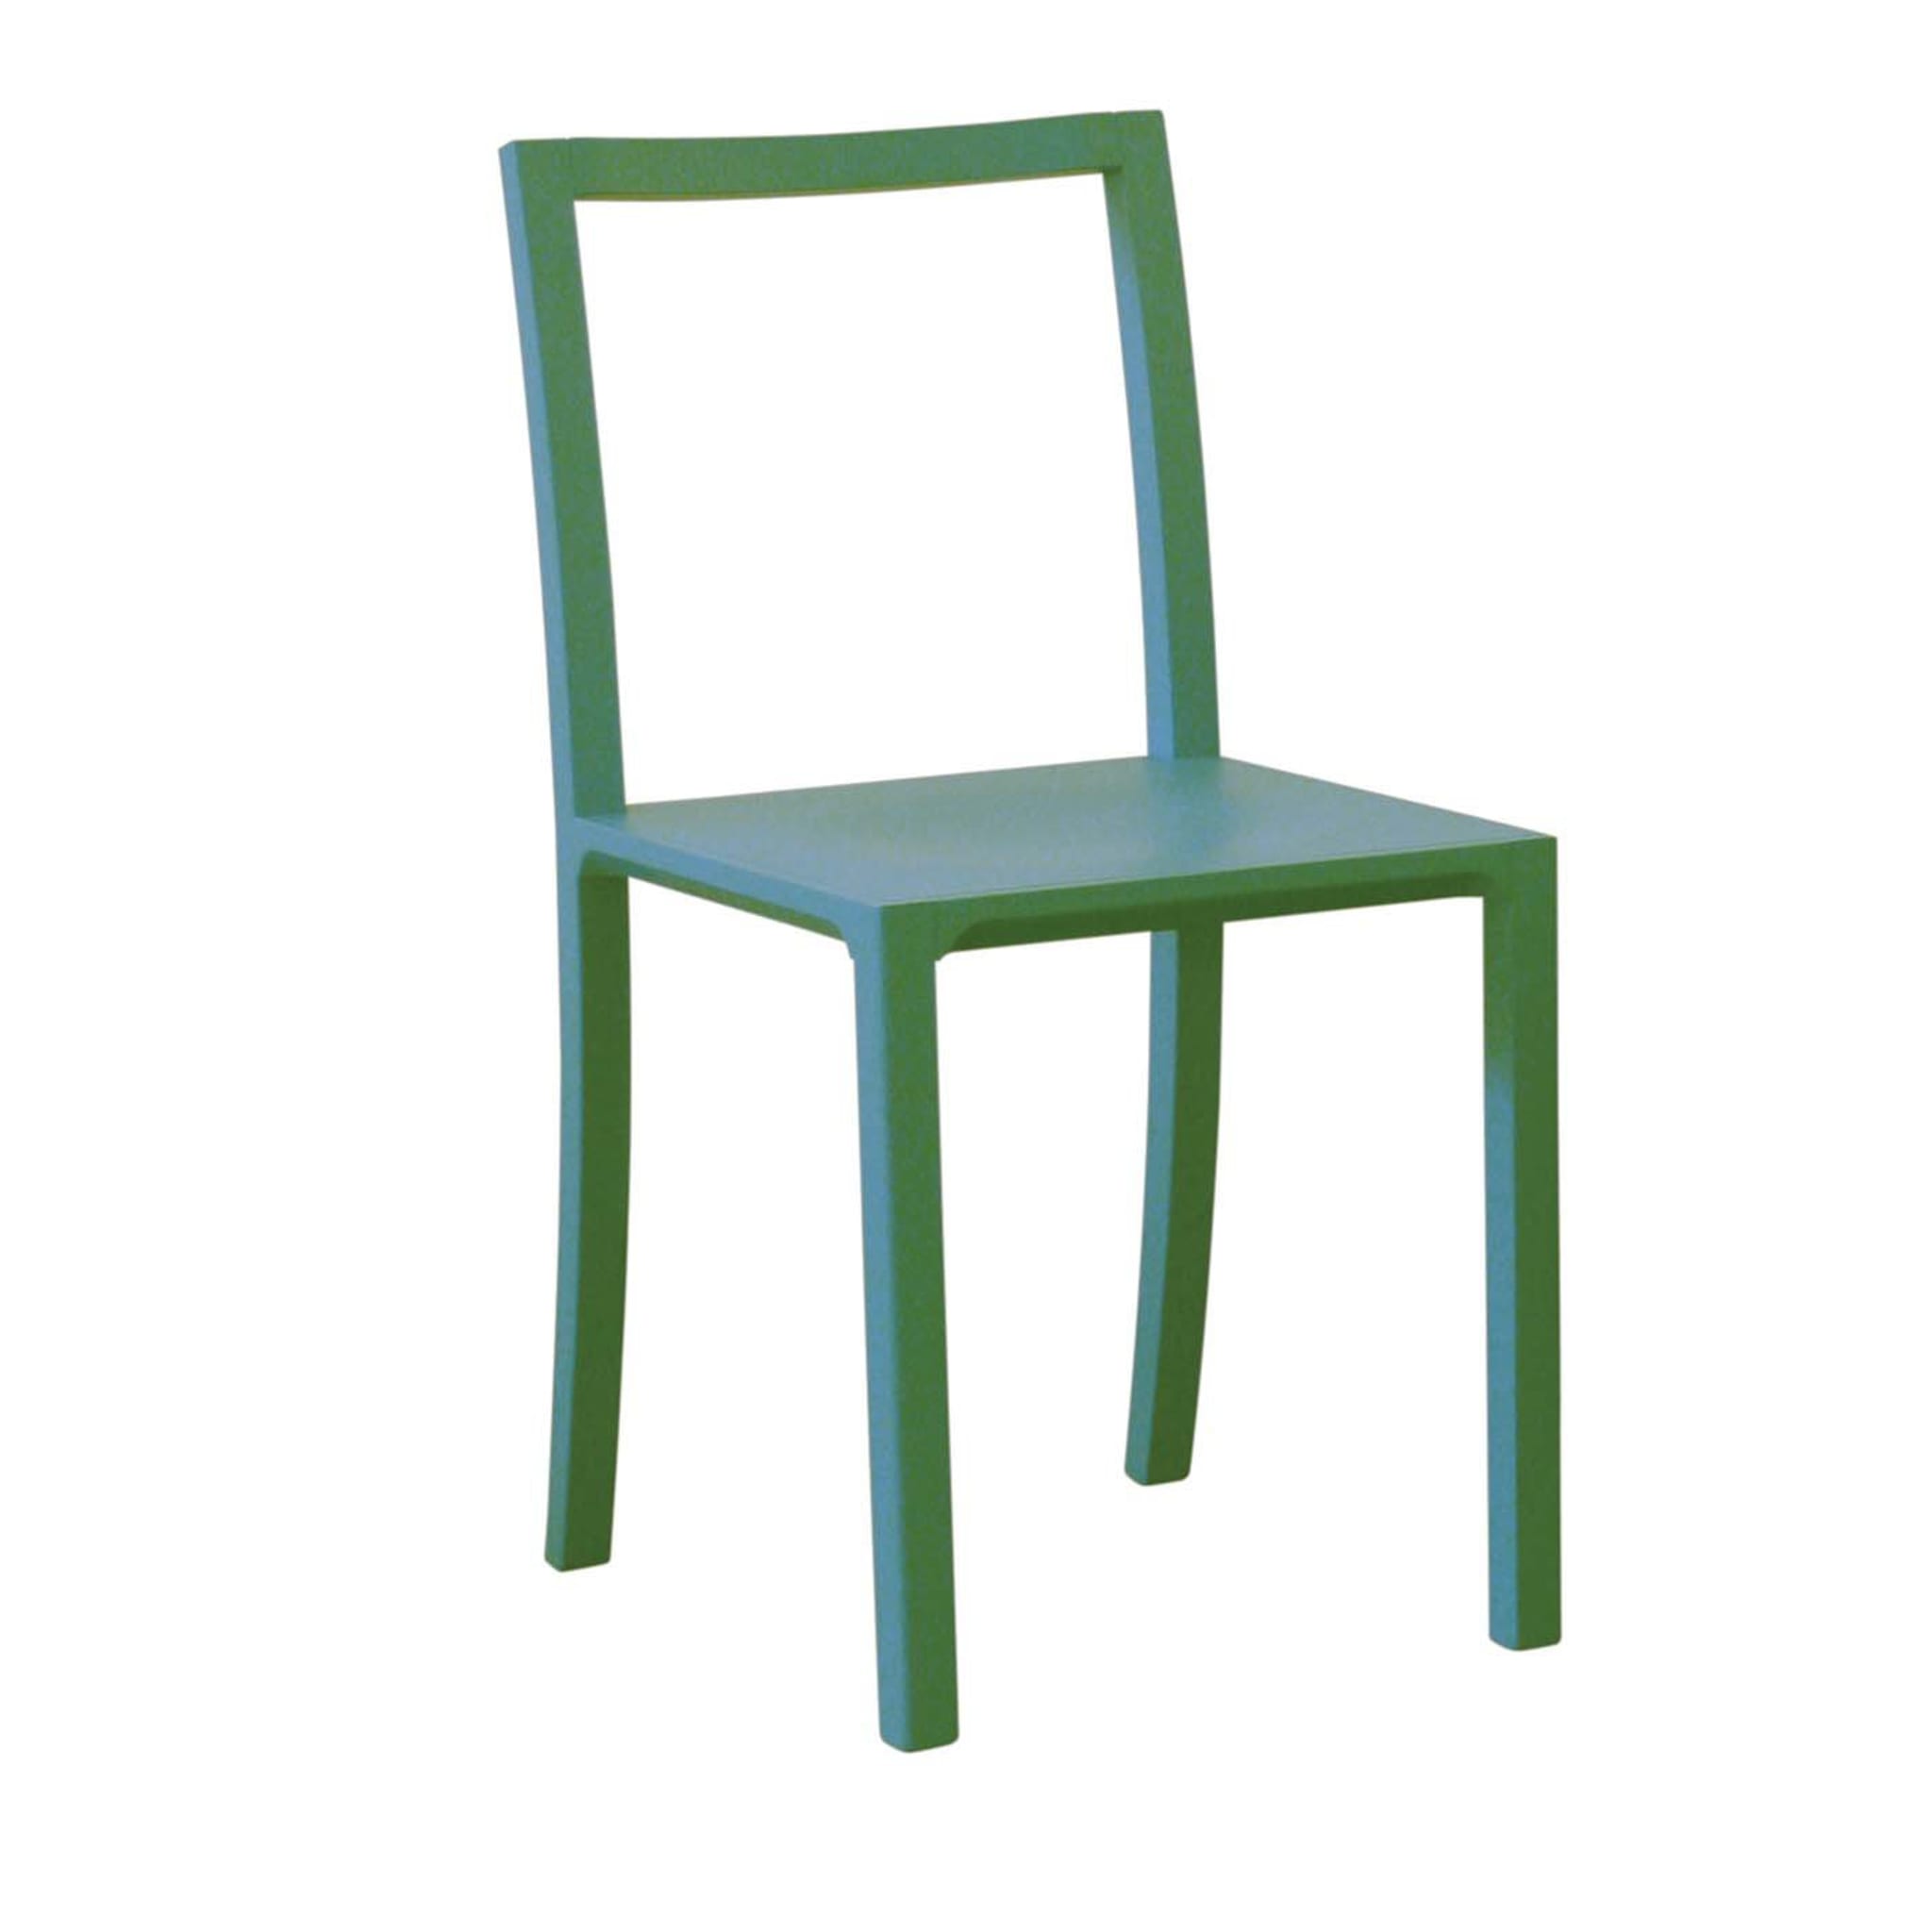 Framework Satz von 2 grünen Stühlen by Steffen Kehrle - Hauptansicht